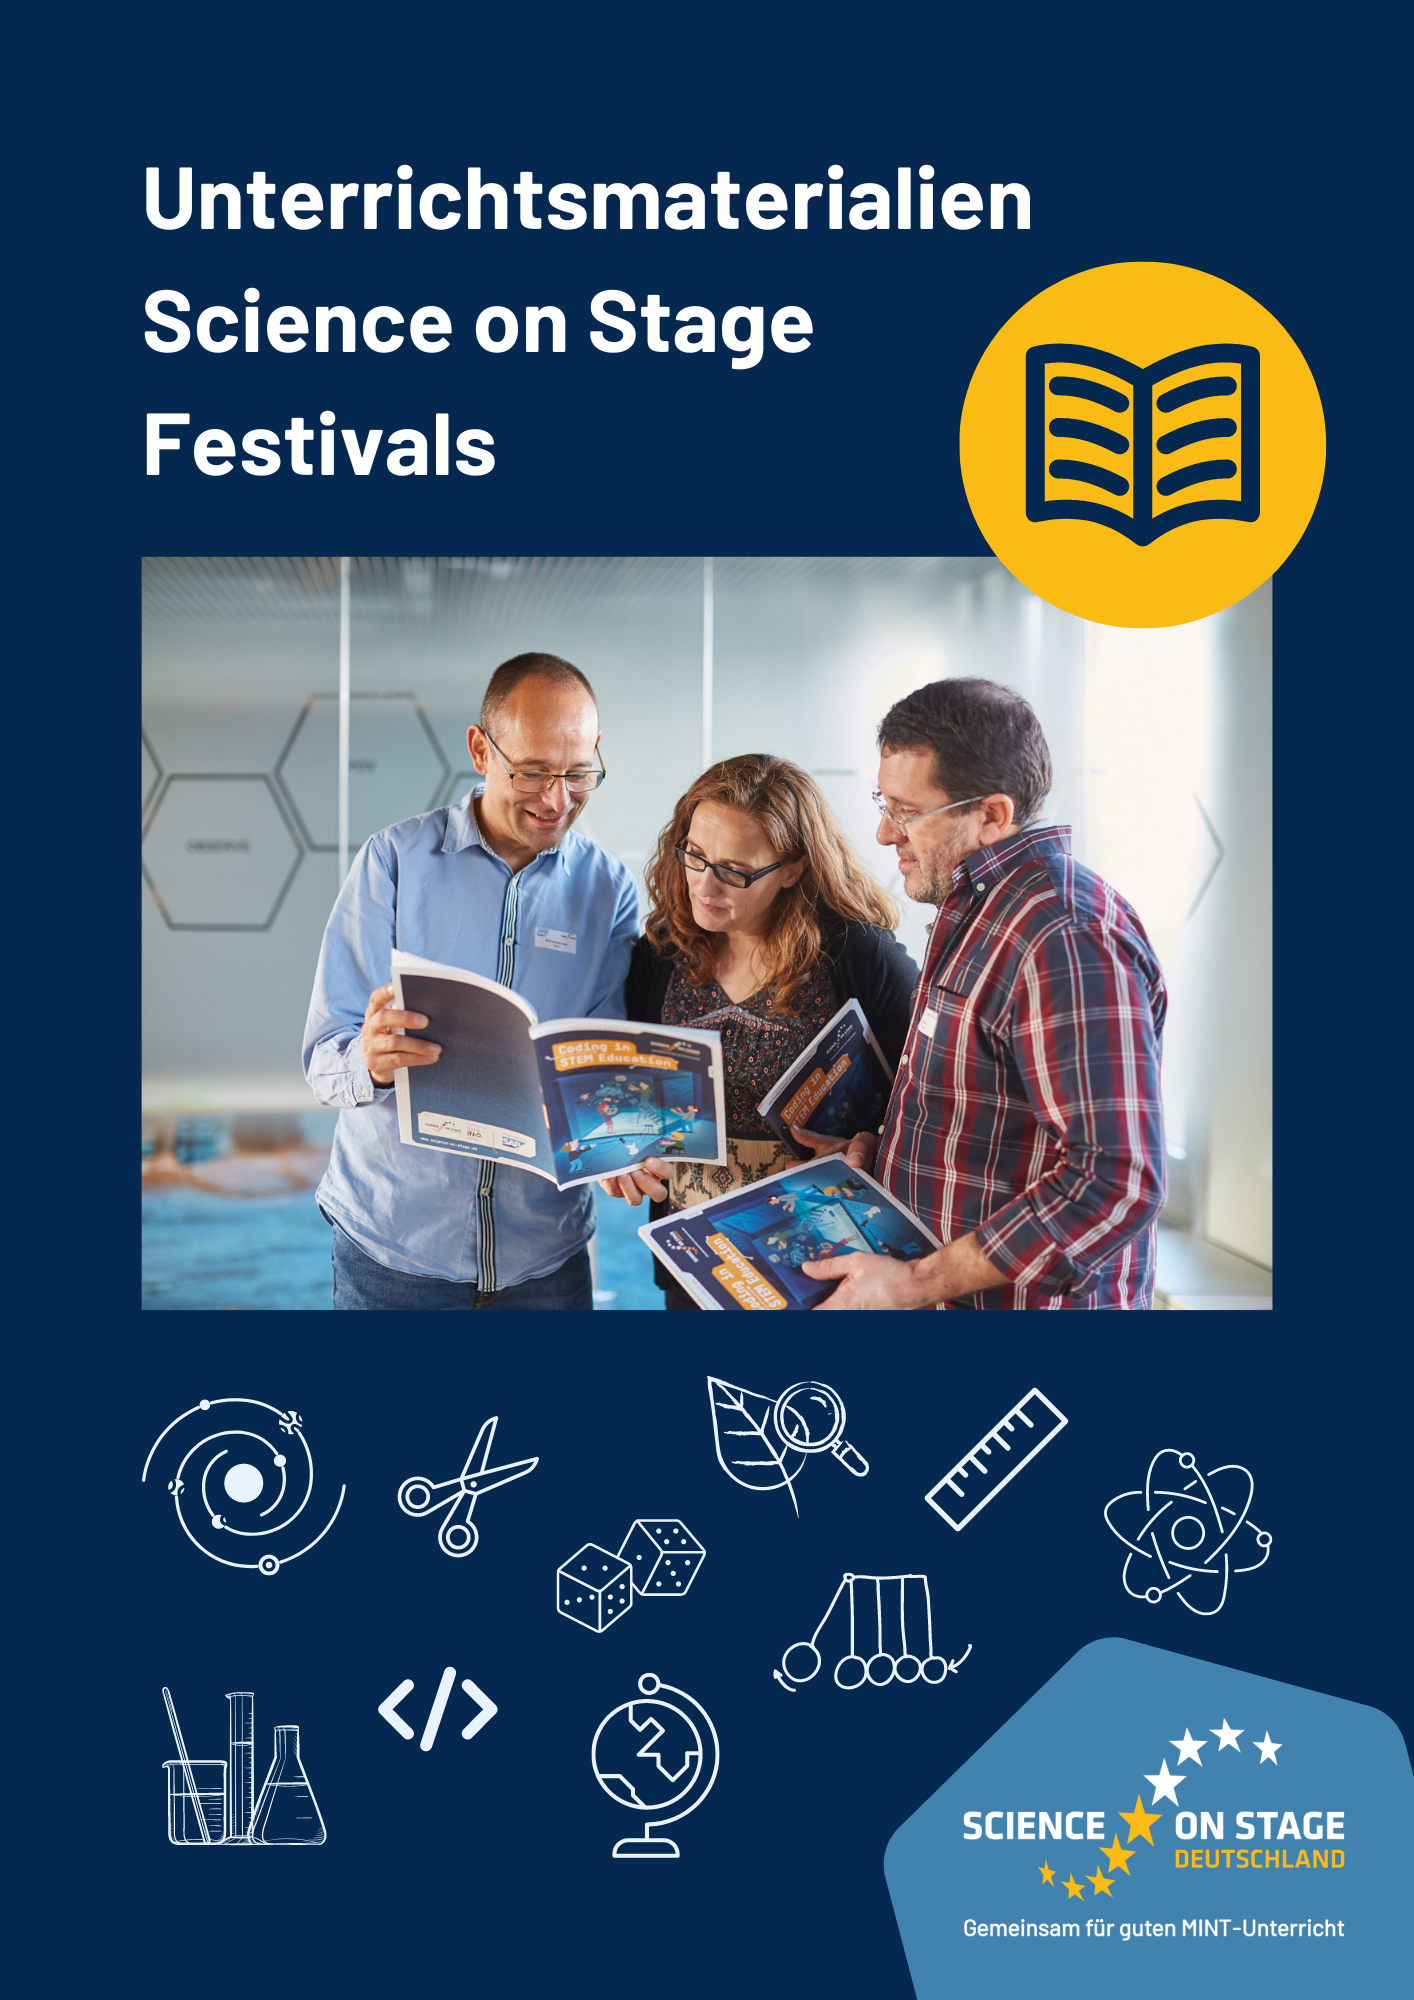 Drei Personen schauen sich eine Broschüre an. Darüber steht: Unterrichtsmaterialien Science on Stage Festivals.